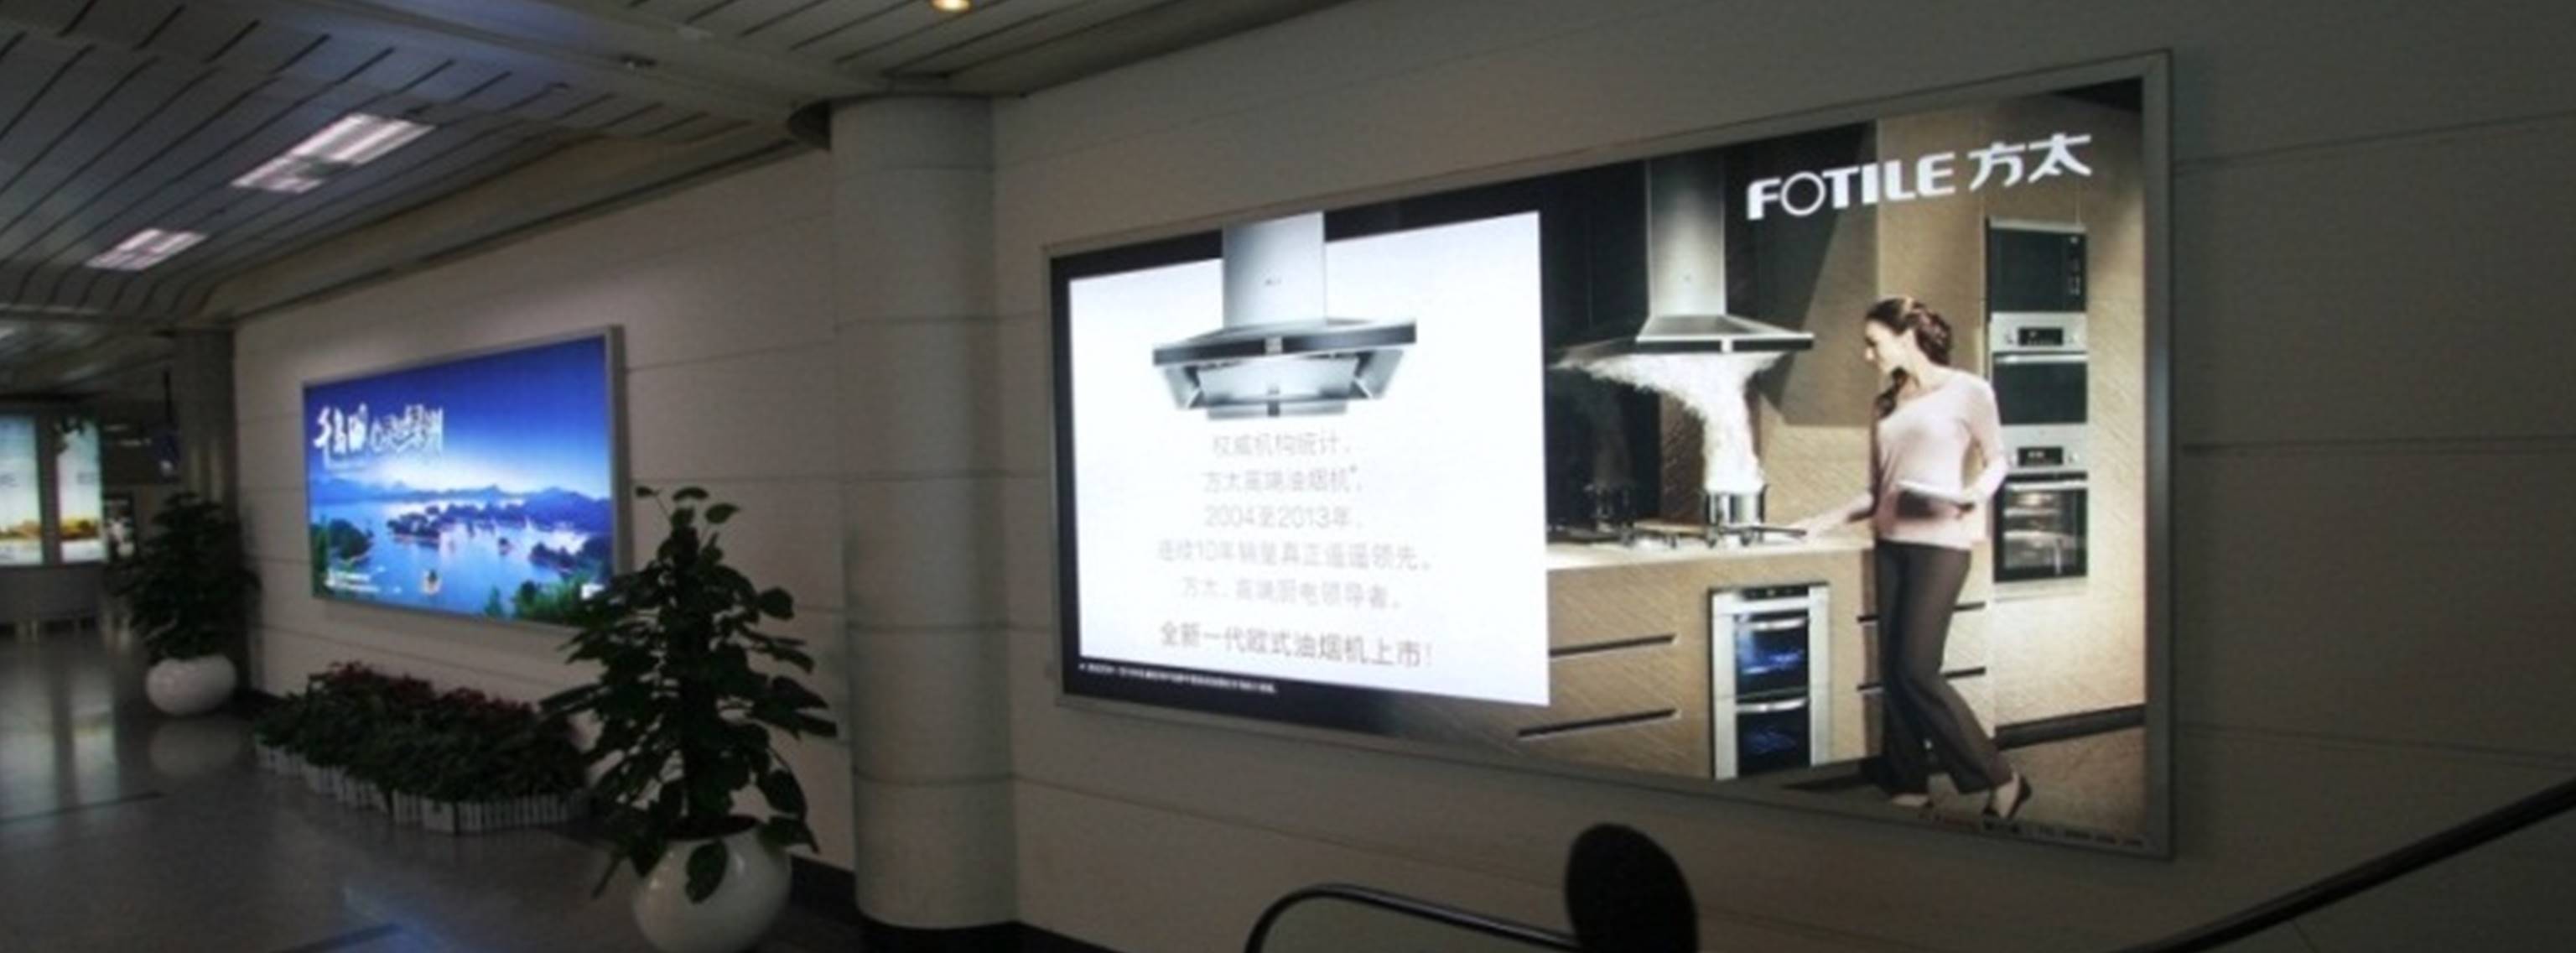 杭州萧山机场广告-T1到达自动扶梯旁灯箱DB01